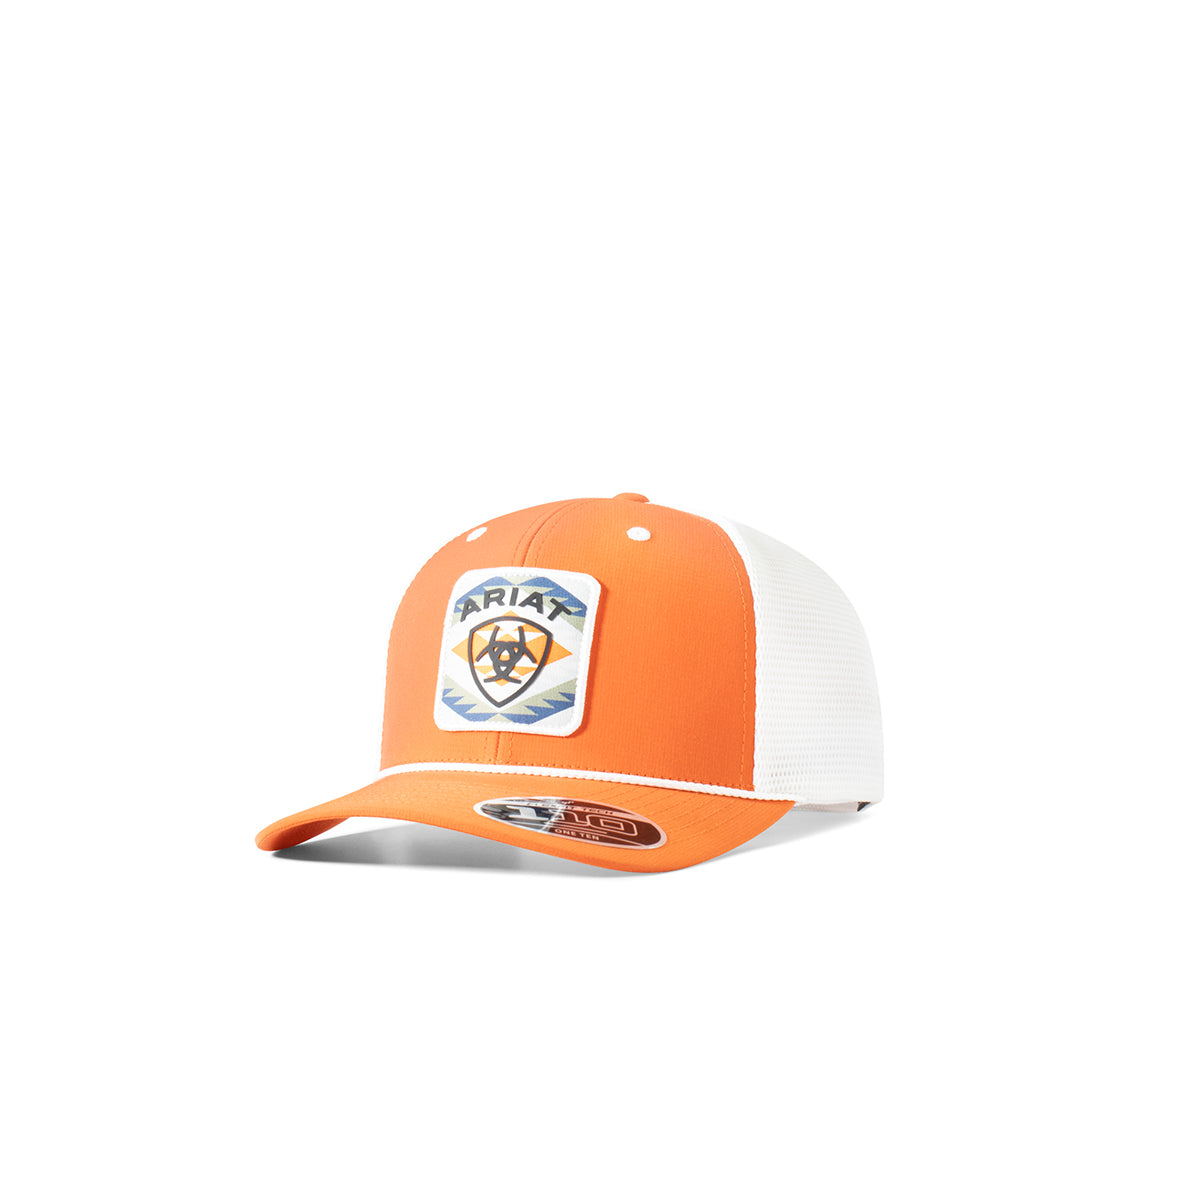 Ariat Men's Flexfit 110 Southwest Patch Snap Back Cap - Orange